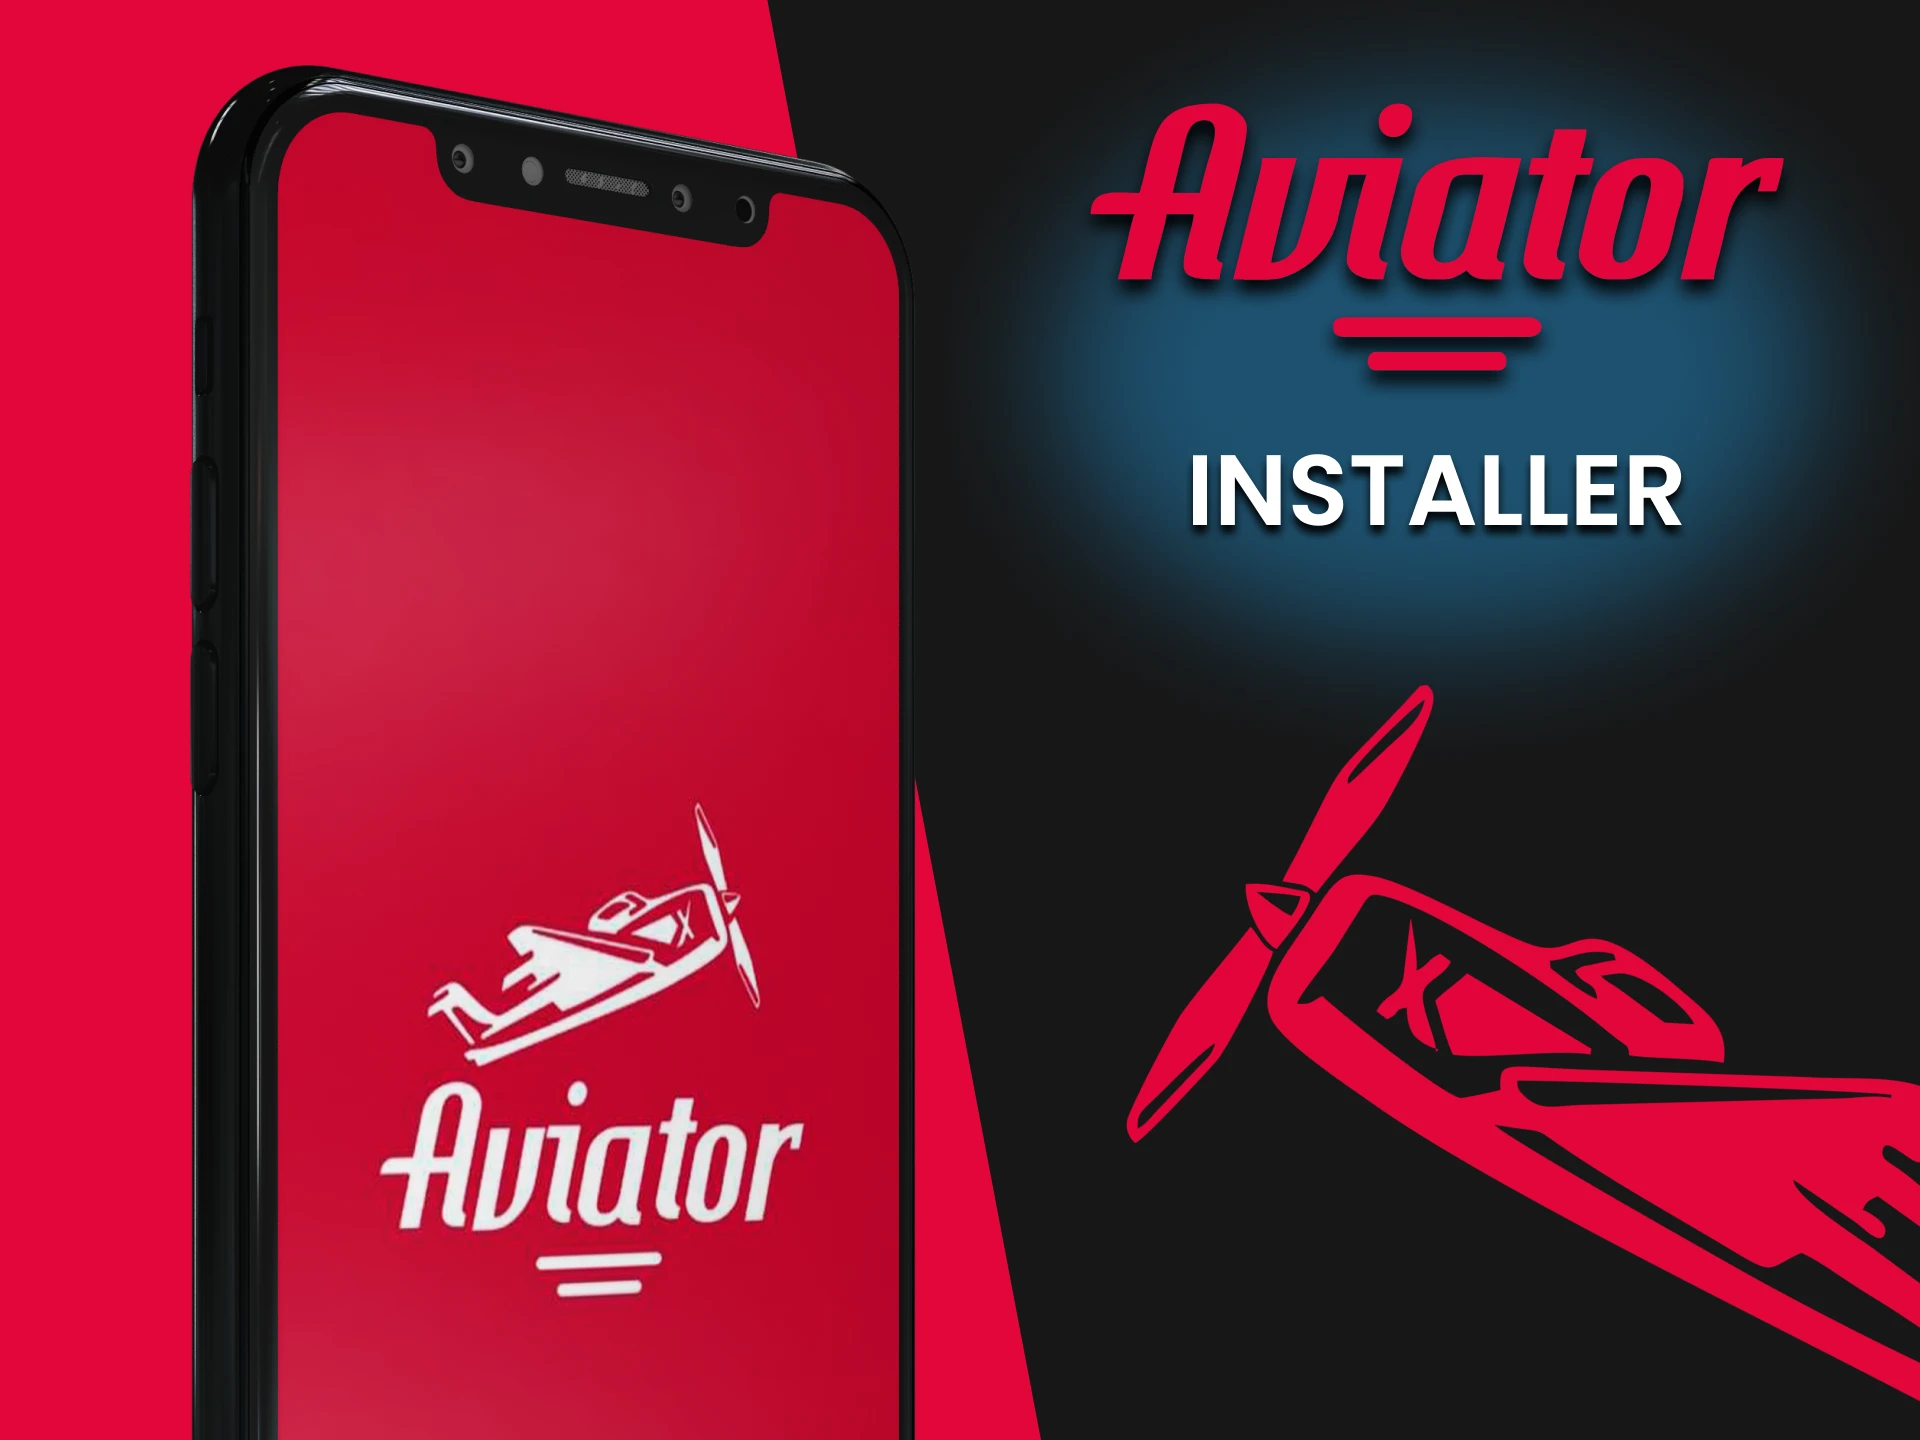 Découvrez comment installer correctement l'application Aviator.